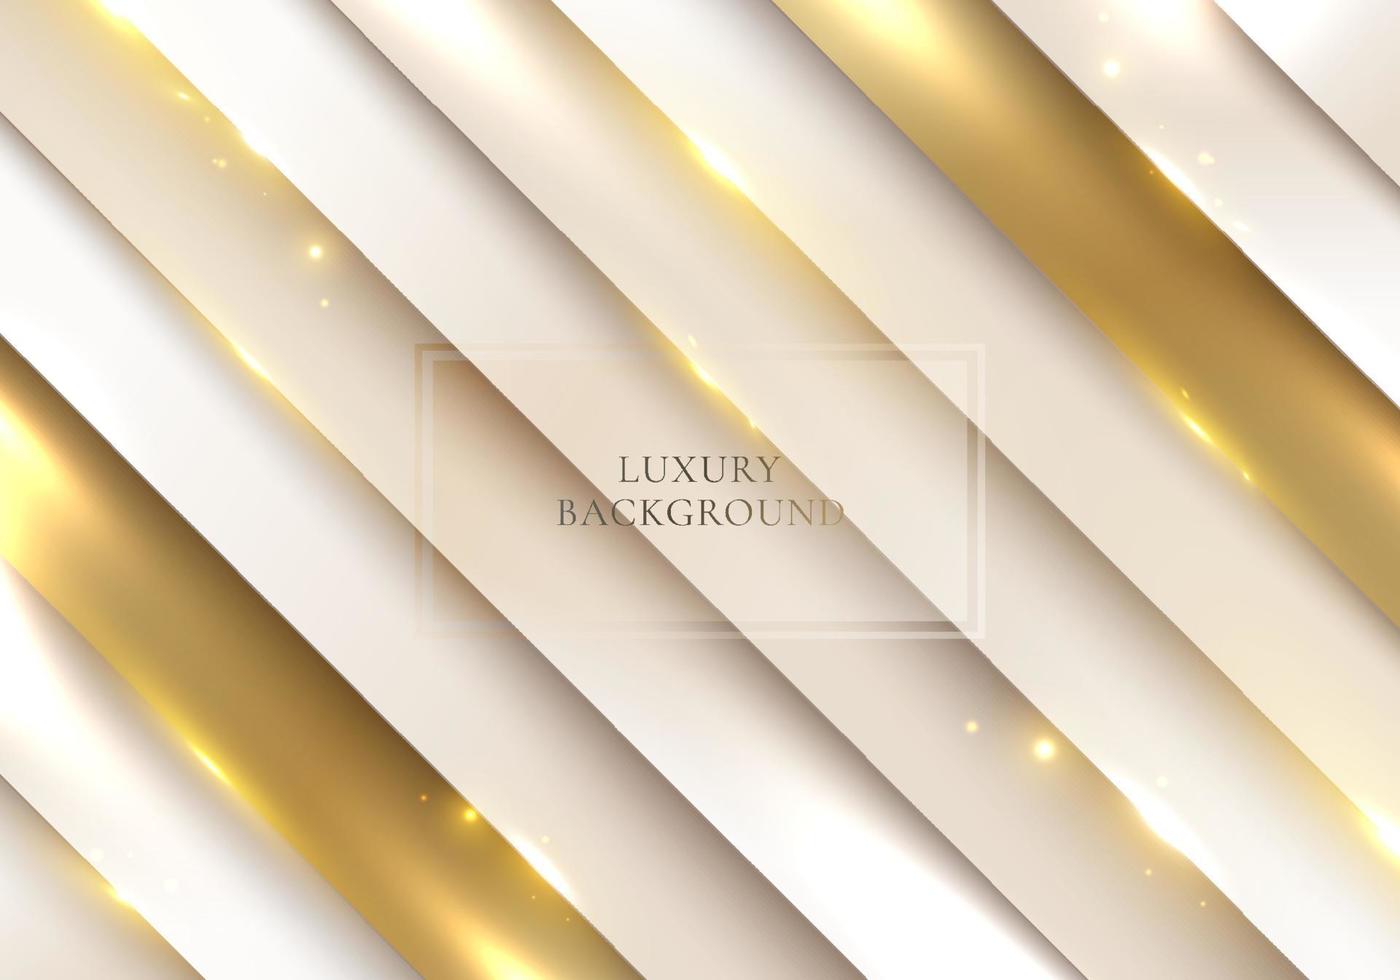 sfondo astratto motivo a strisce diagonali bianche e oro con decorazione scintillante di illuminazione stile di lusso vettore